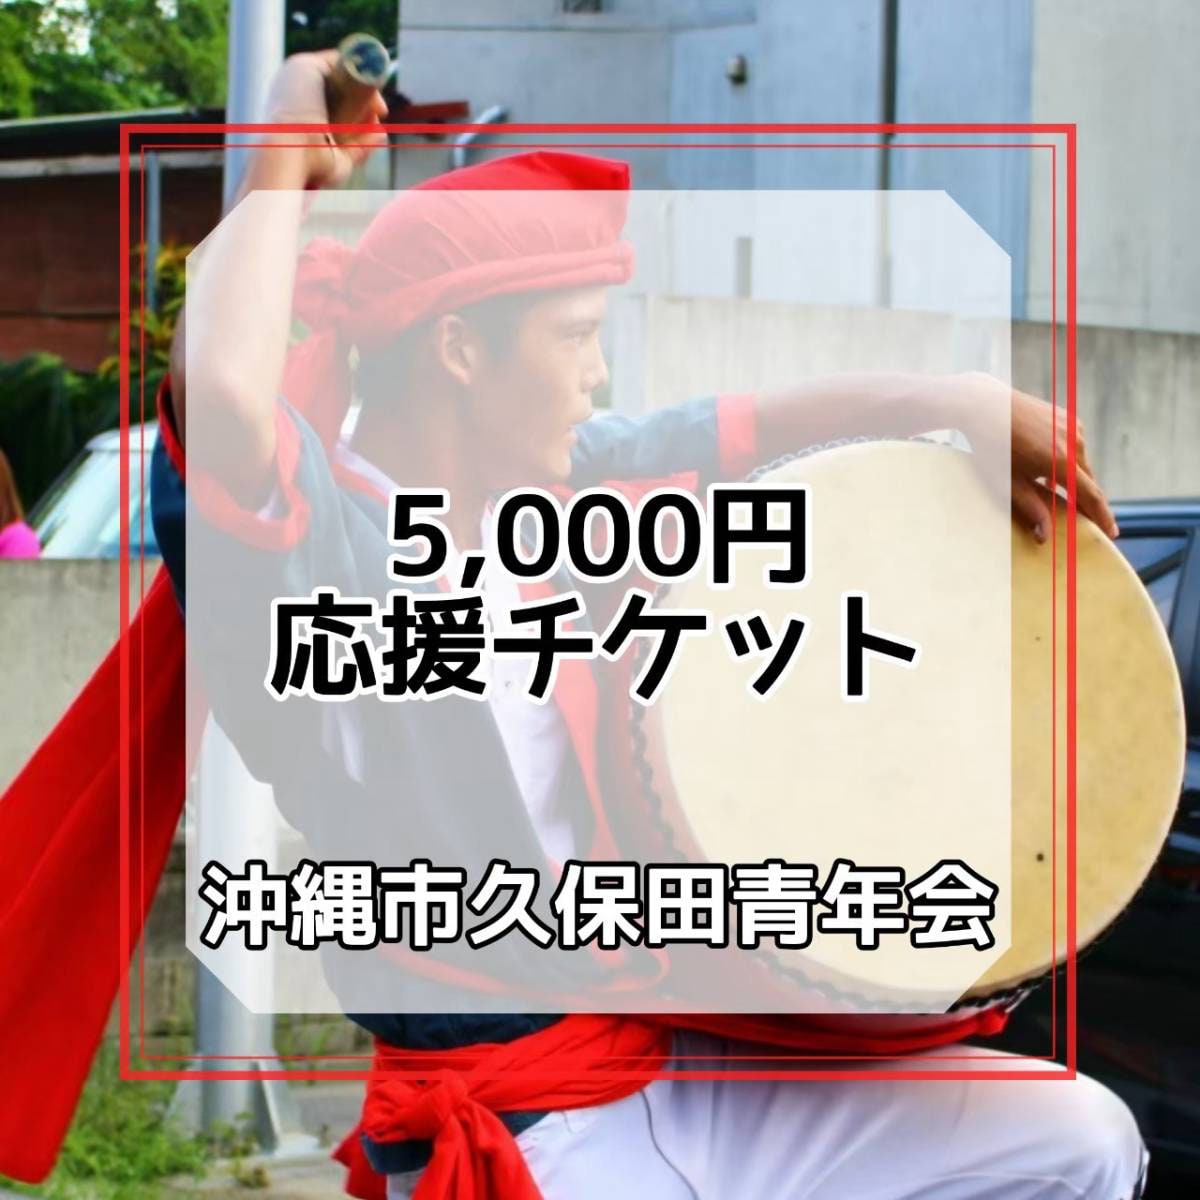 5000円応援チケット